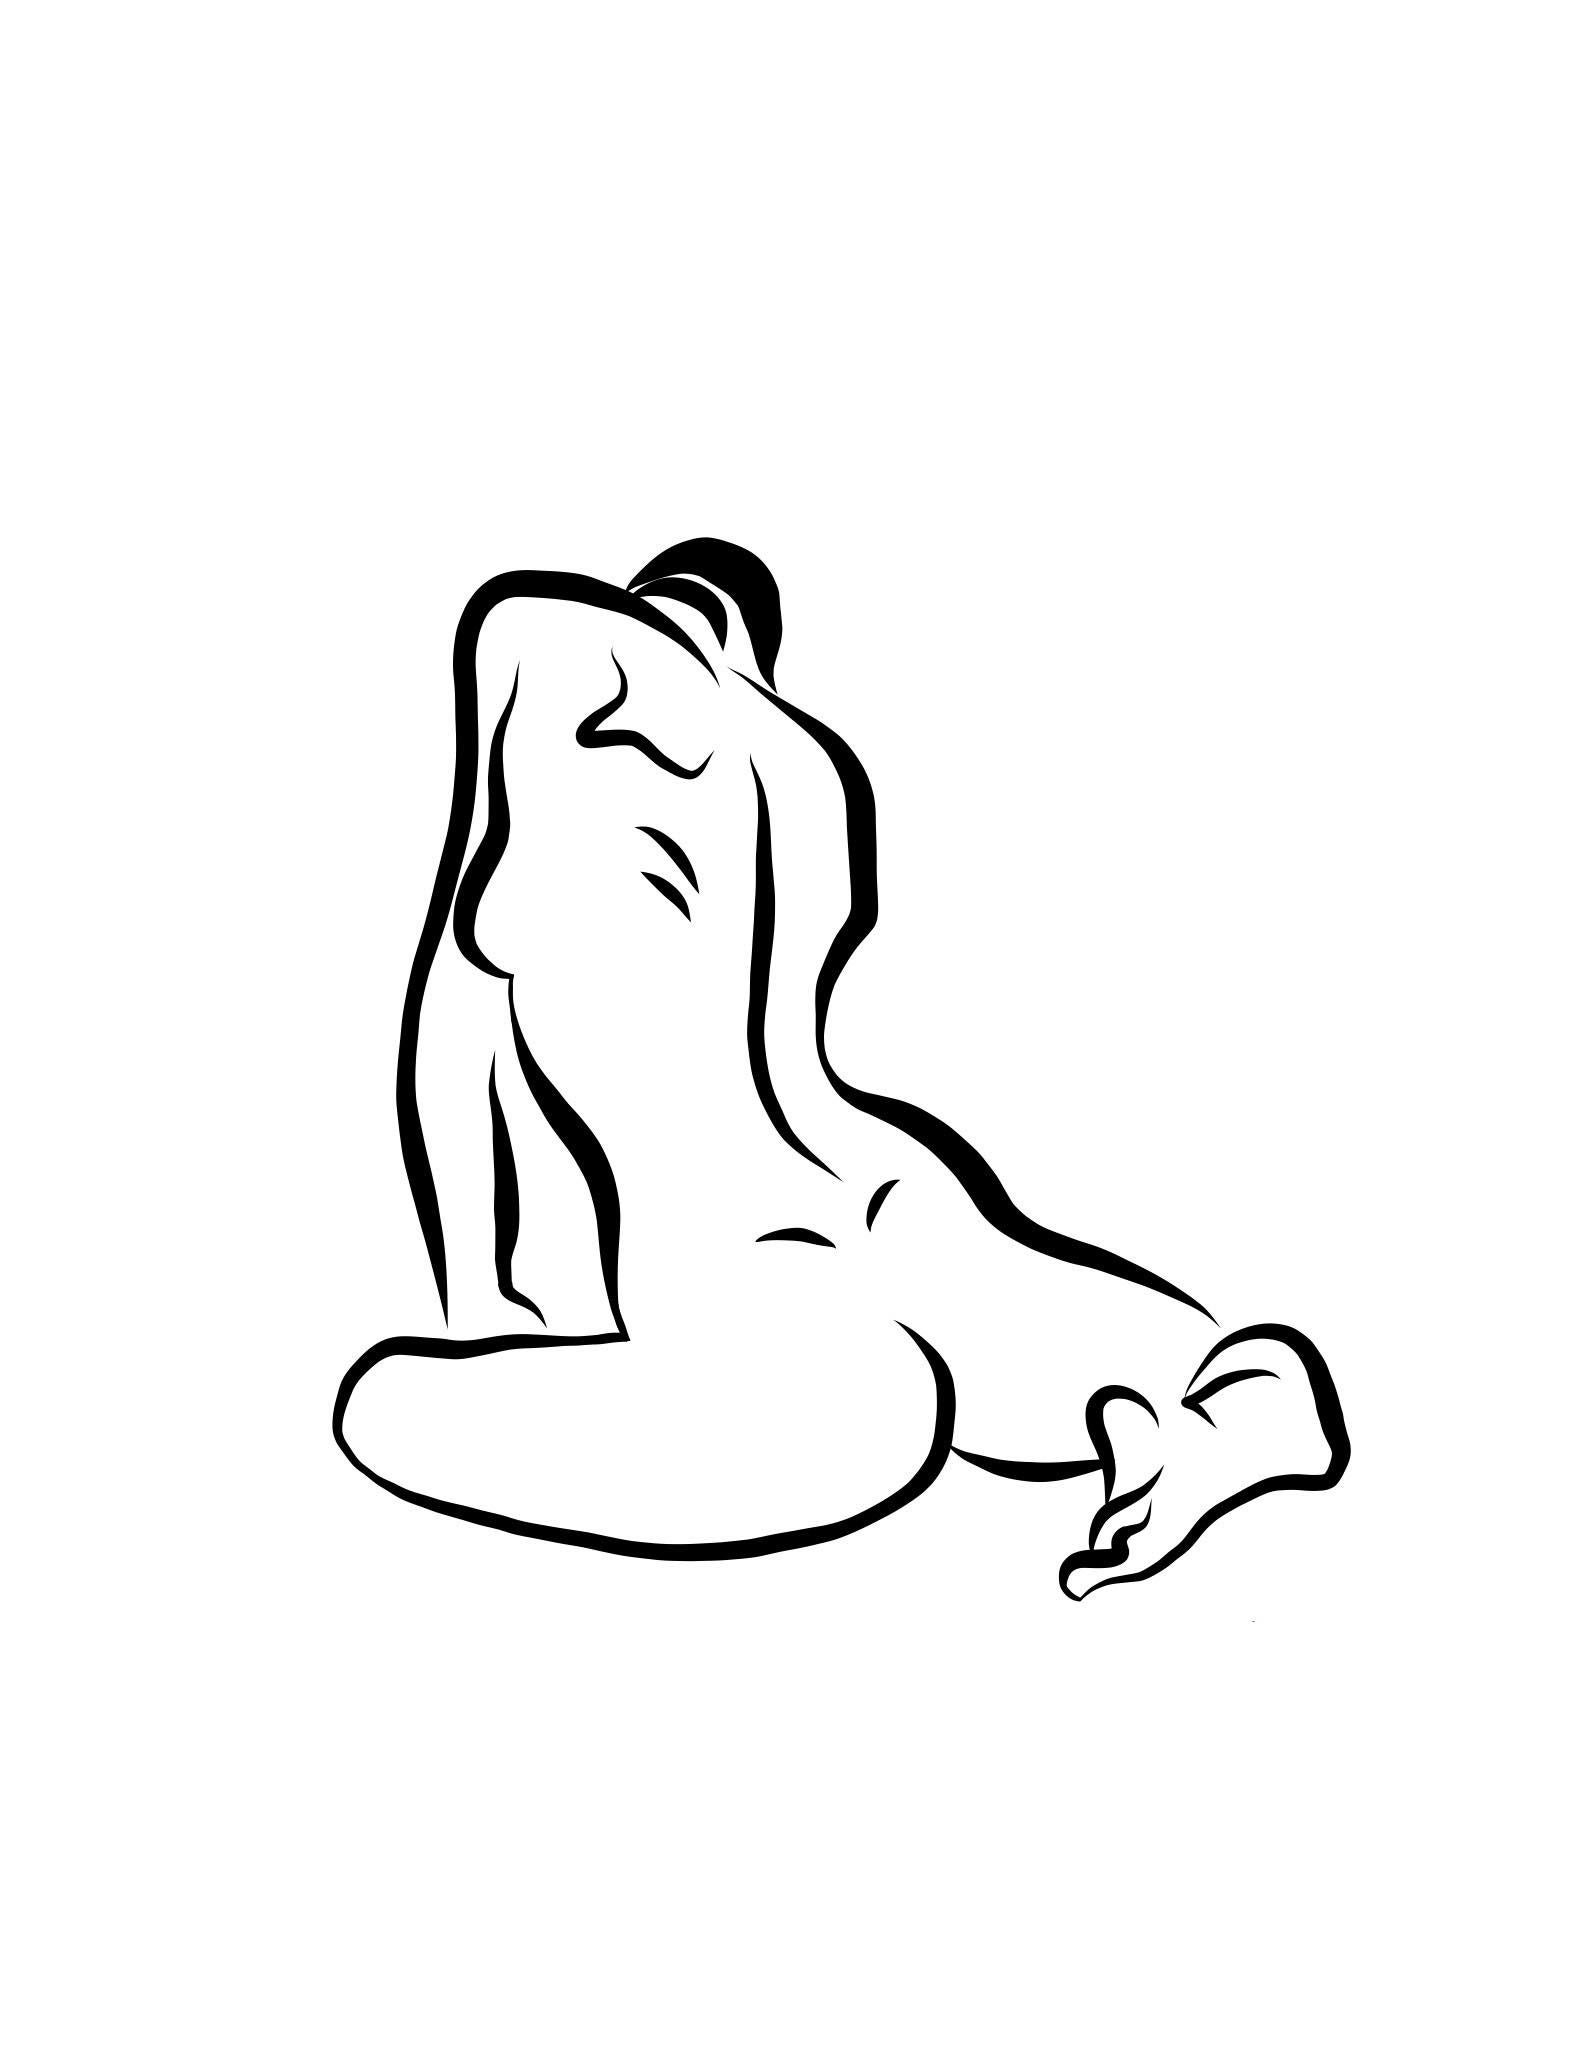 Michael Binkley Nude Print - Haiku #16, 1/50 - Digital Vector Drawing Seated Female Nude Woman Figure Behind